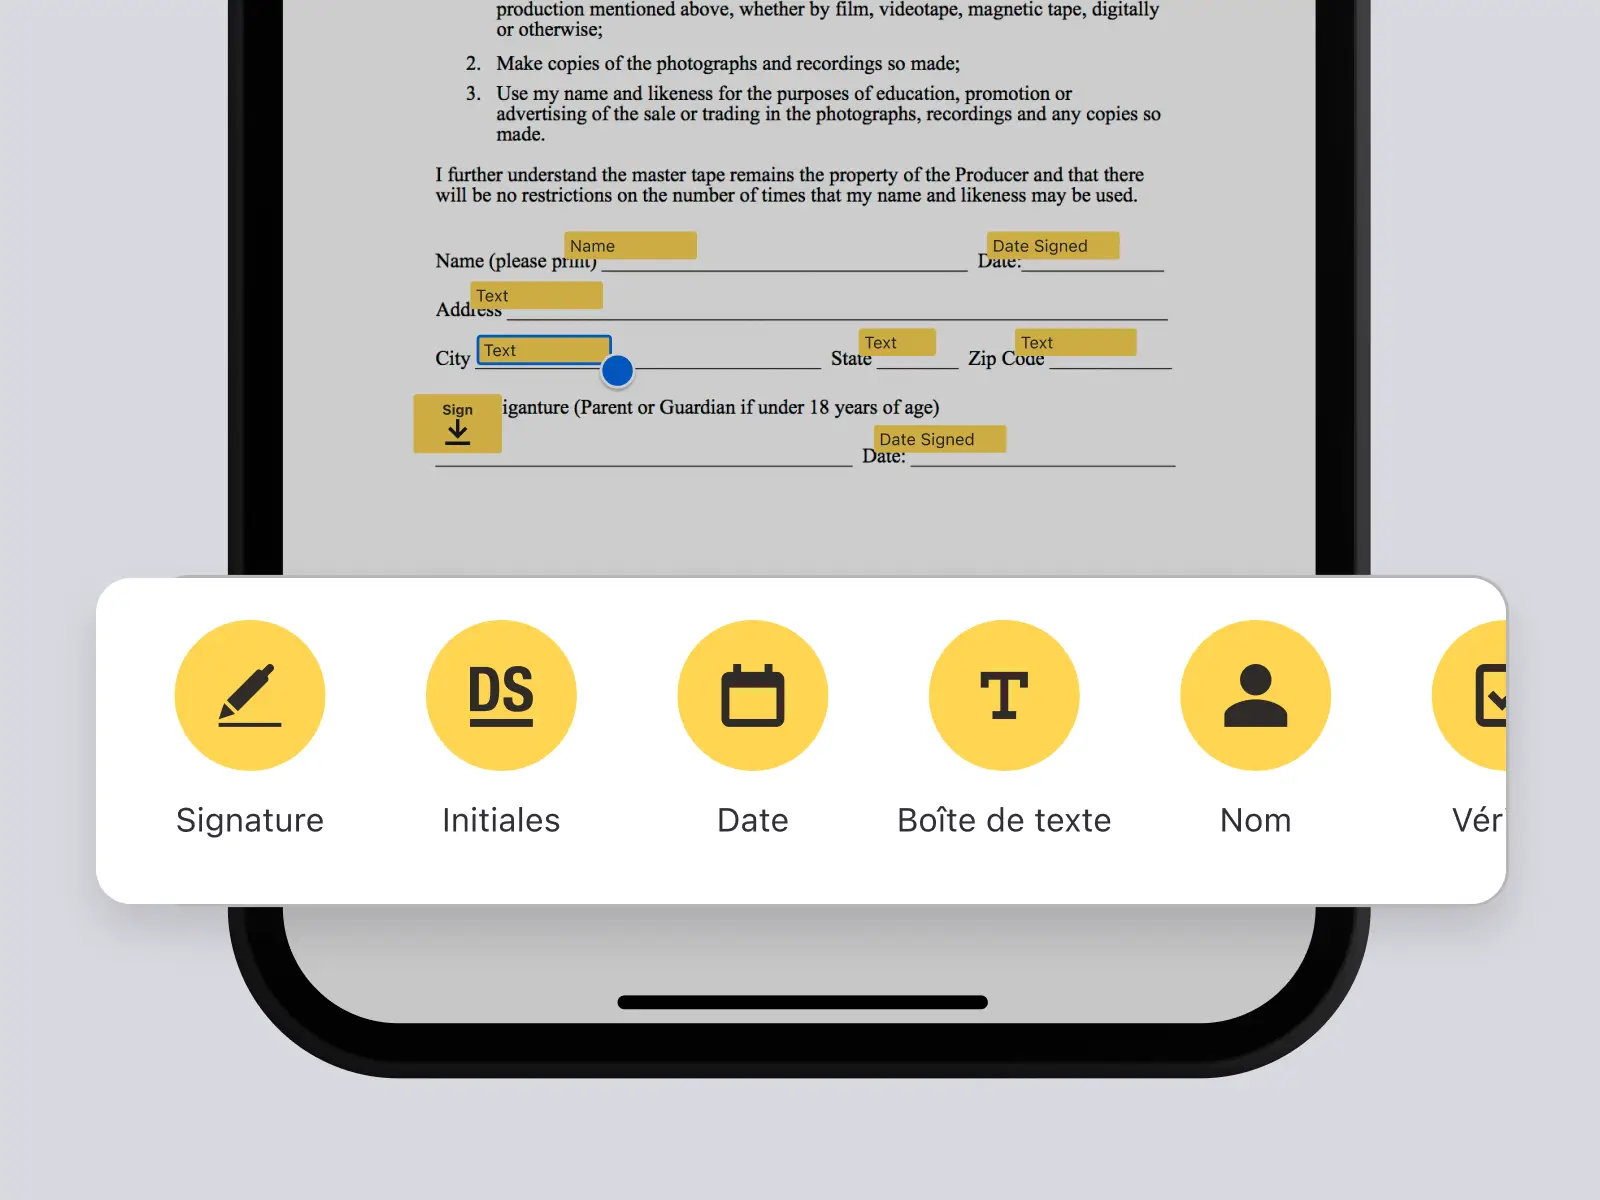 Écran de téléphone montrant un document dans l’application DocuSign avec des options pour ajouter une signature, des initiales, une date, et plus encore